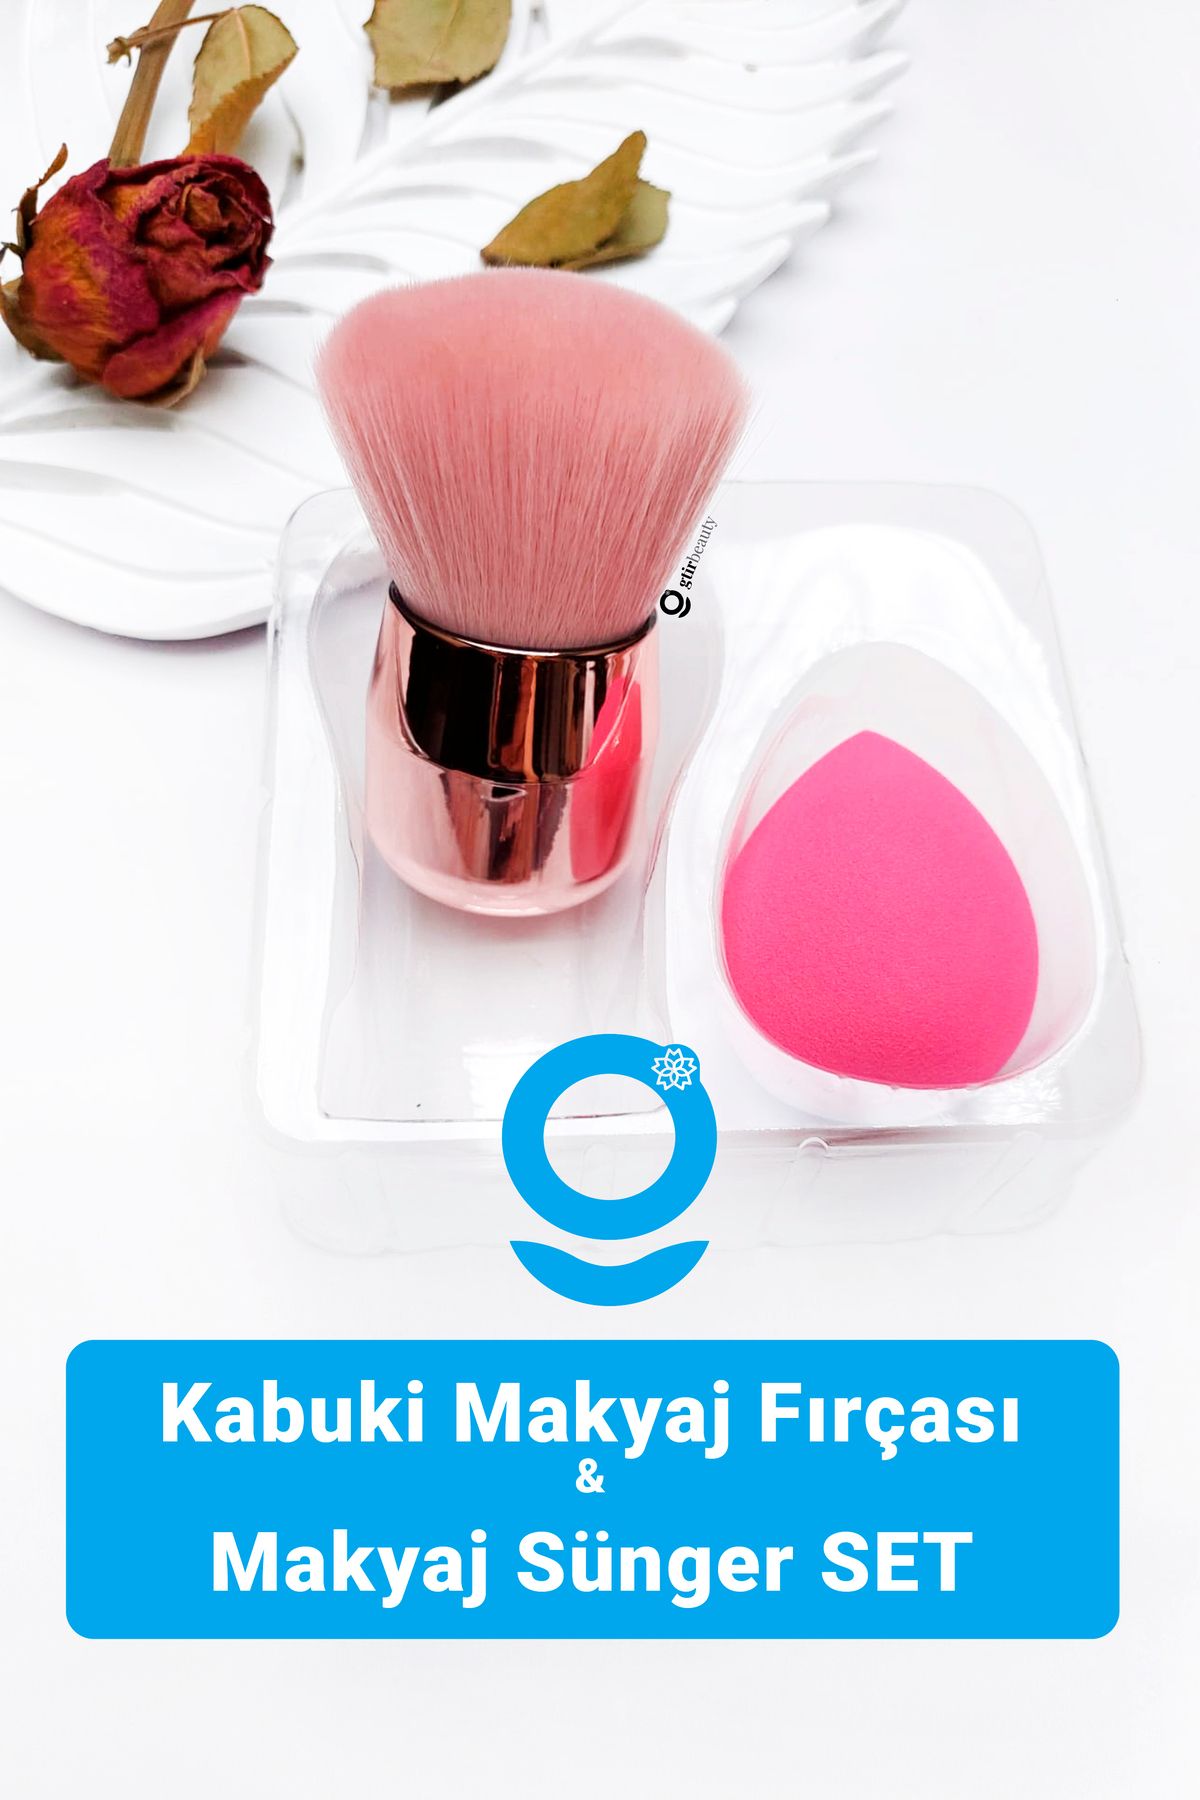 Gtir Beauty Kabuki Makyaj Fırçası & Makyaj Sünger SET - Daubigny Pudra, Allık, Toz Fırçası & Makyaj Sünger Seti